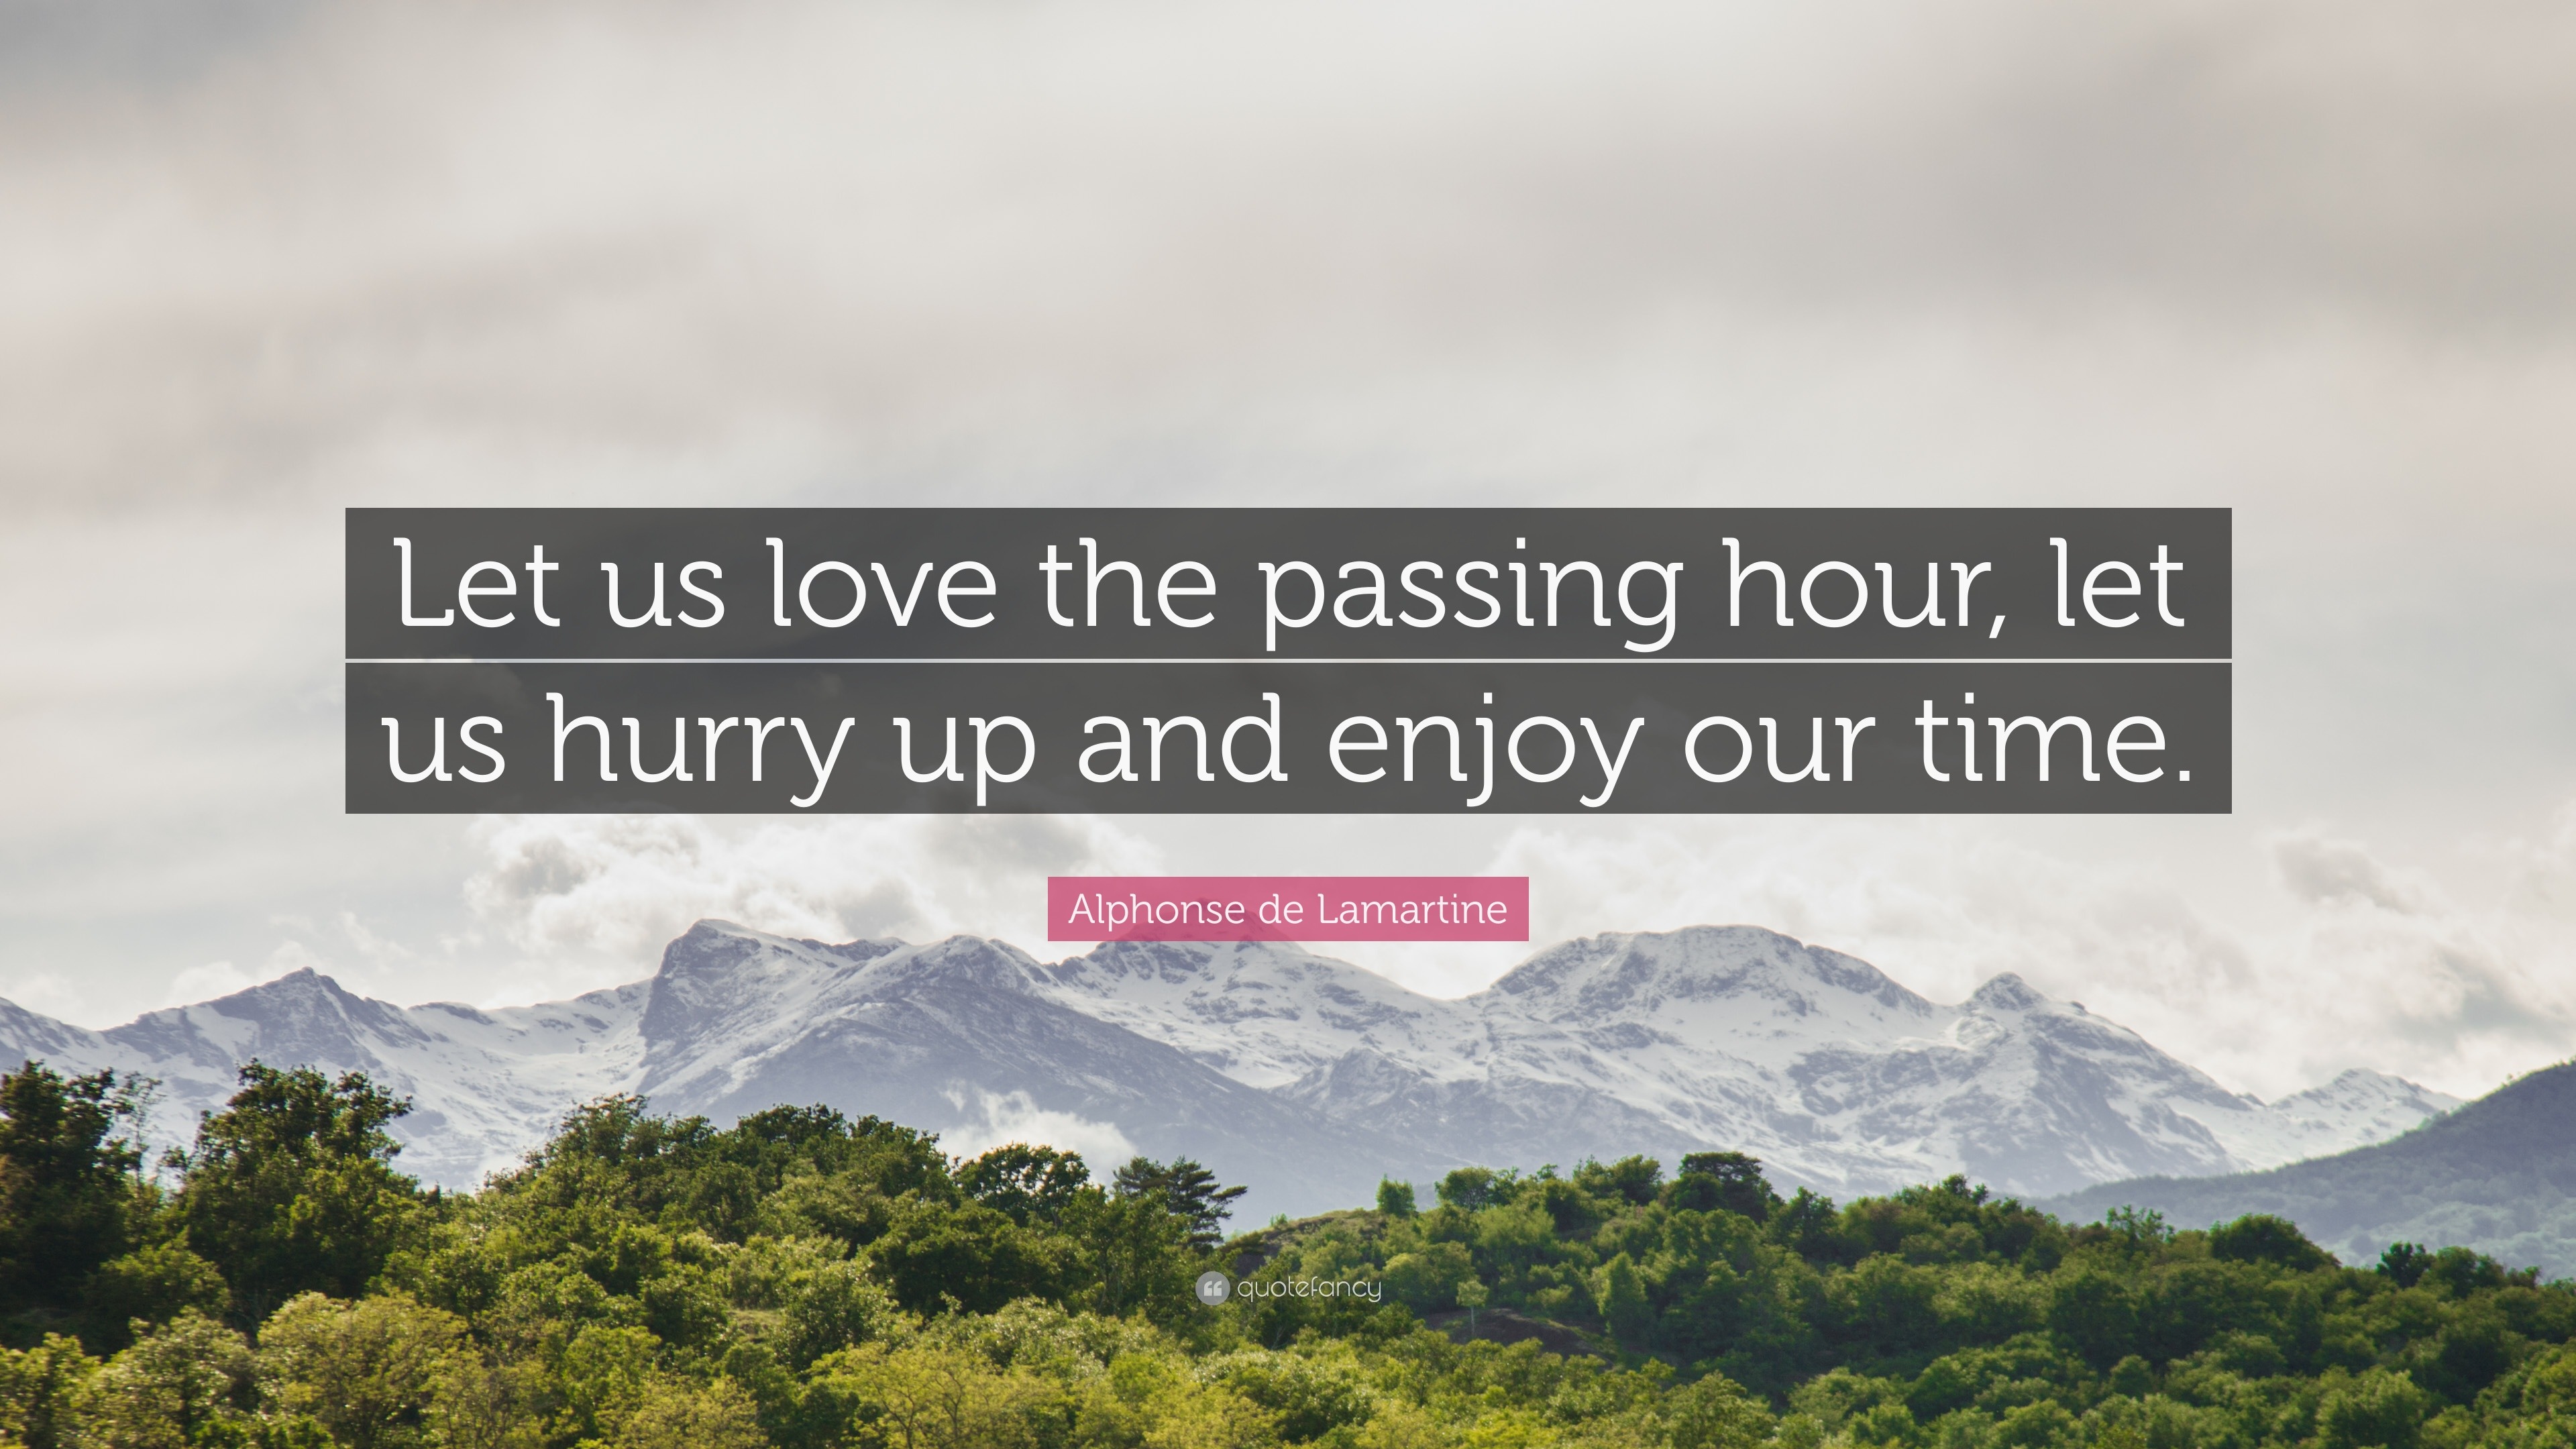 Alphonse de Lamartine Quote “Let us love the passing hour let us hurry